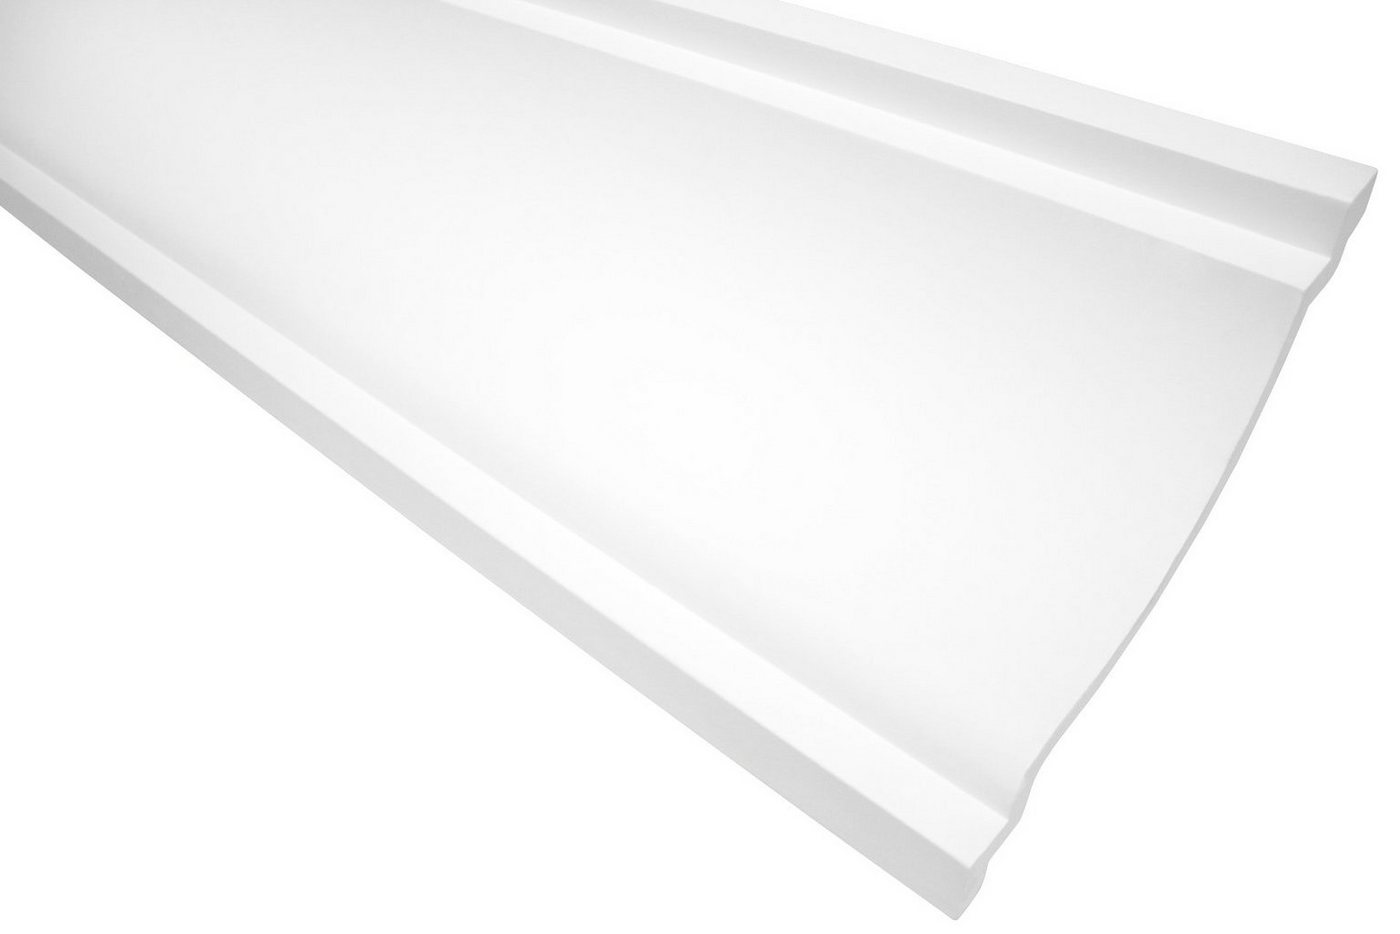 Hexim Stuckleiste P831, 20 Meter / 10 Leisten, Stuckleisten Decke modern, PU Hartschaum weiß - 2m Deckenleisten glatt Abschlussleiste Stuckprofil Dekorleisten (20 Meter) von Hexim